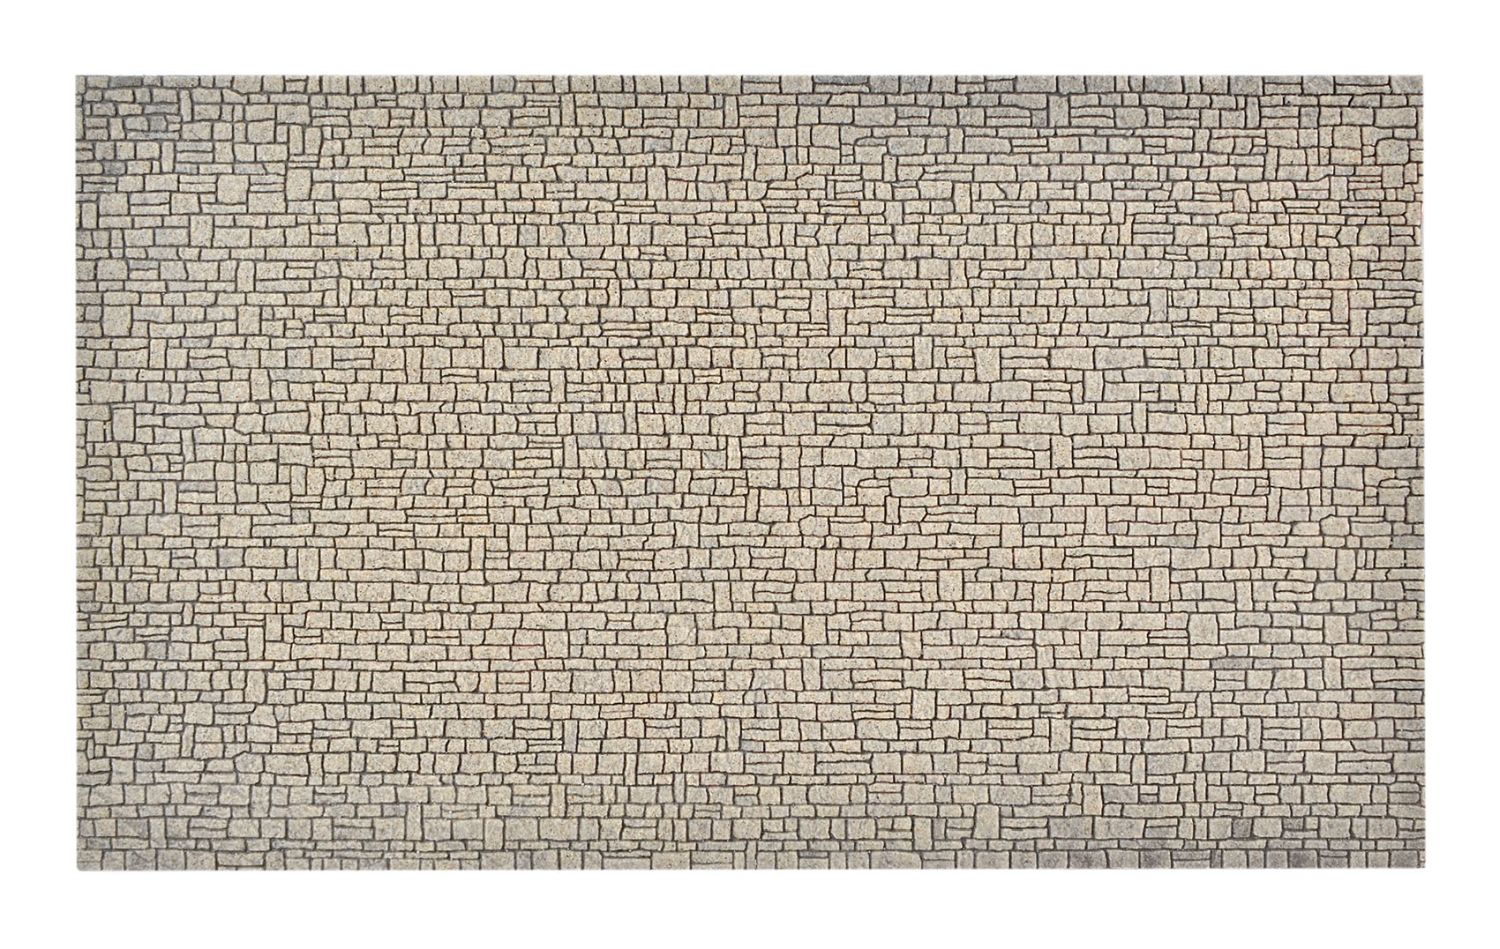 Vollmer 48221 - Mauerplatte Haustein, 28 x 16,3cm